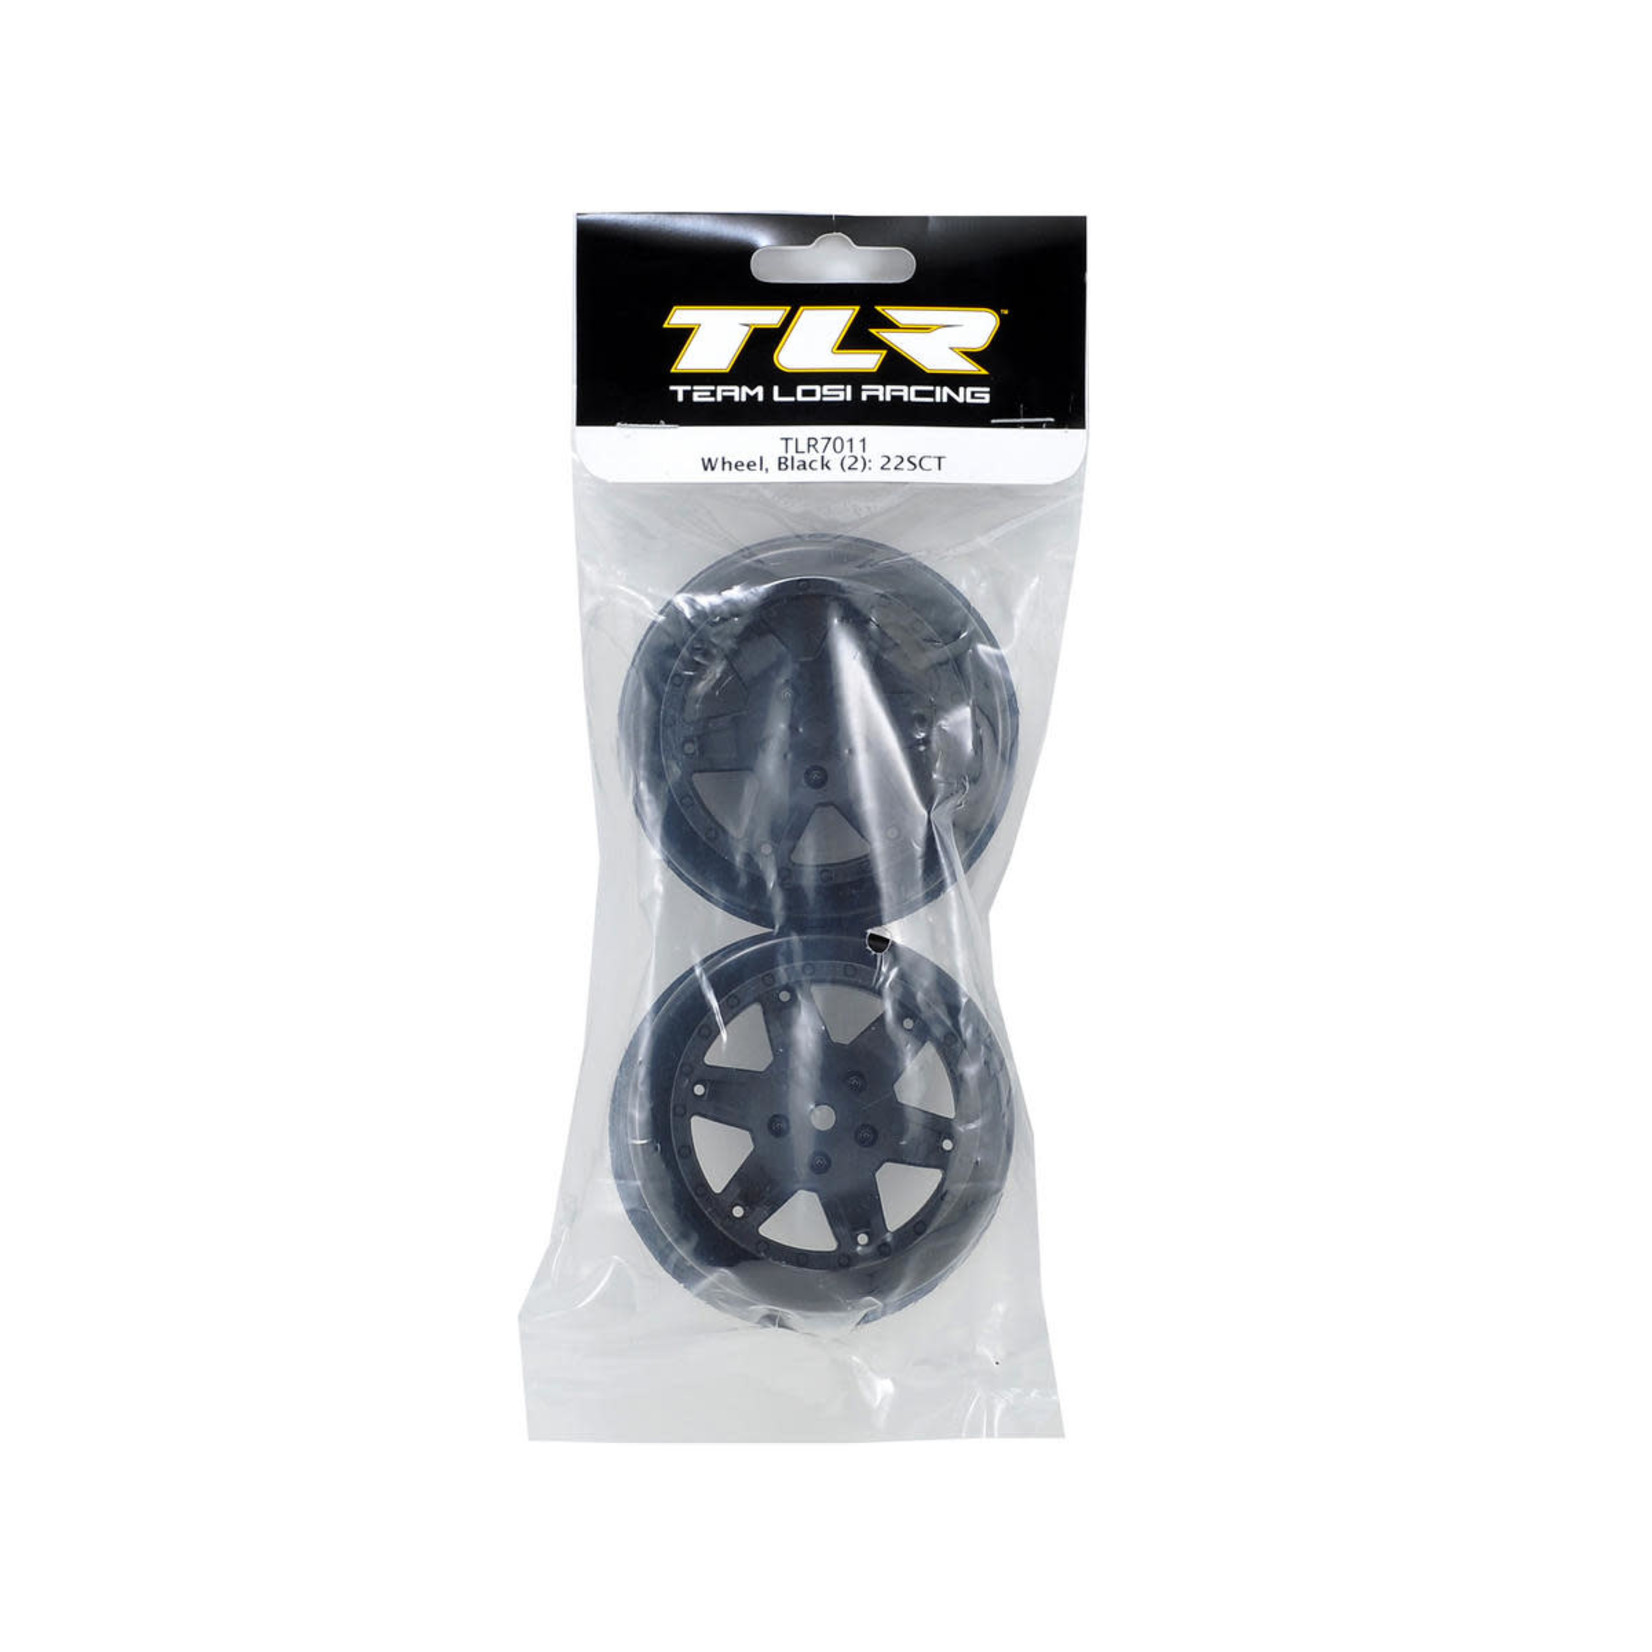 TLR Team Losi Racing 12mm Hex Short Course Wheels (Black) (2) (22SCT/TEN-SCTE) #TLR7011